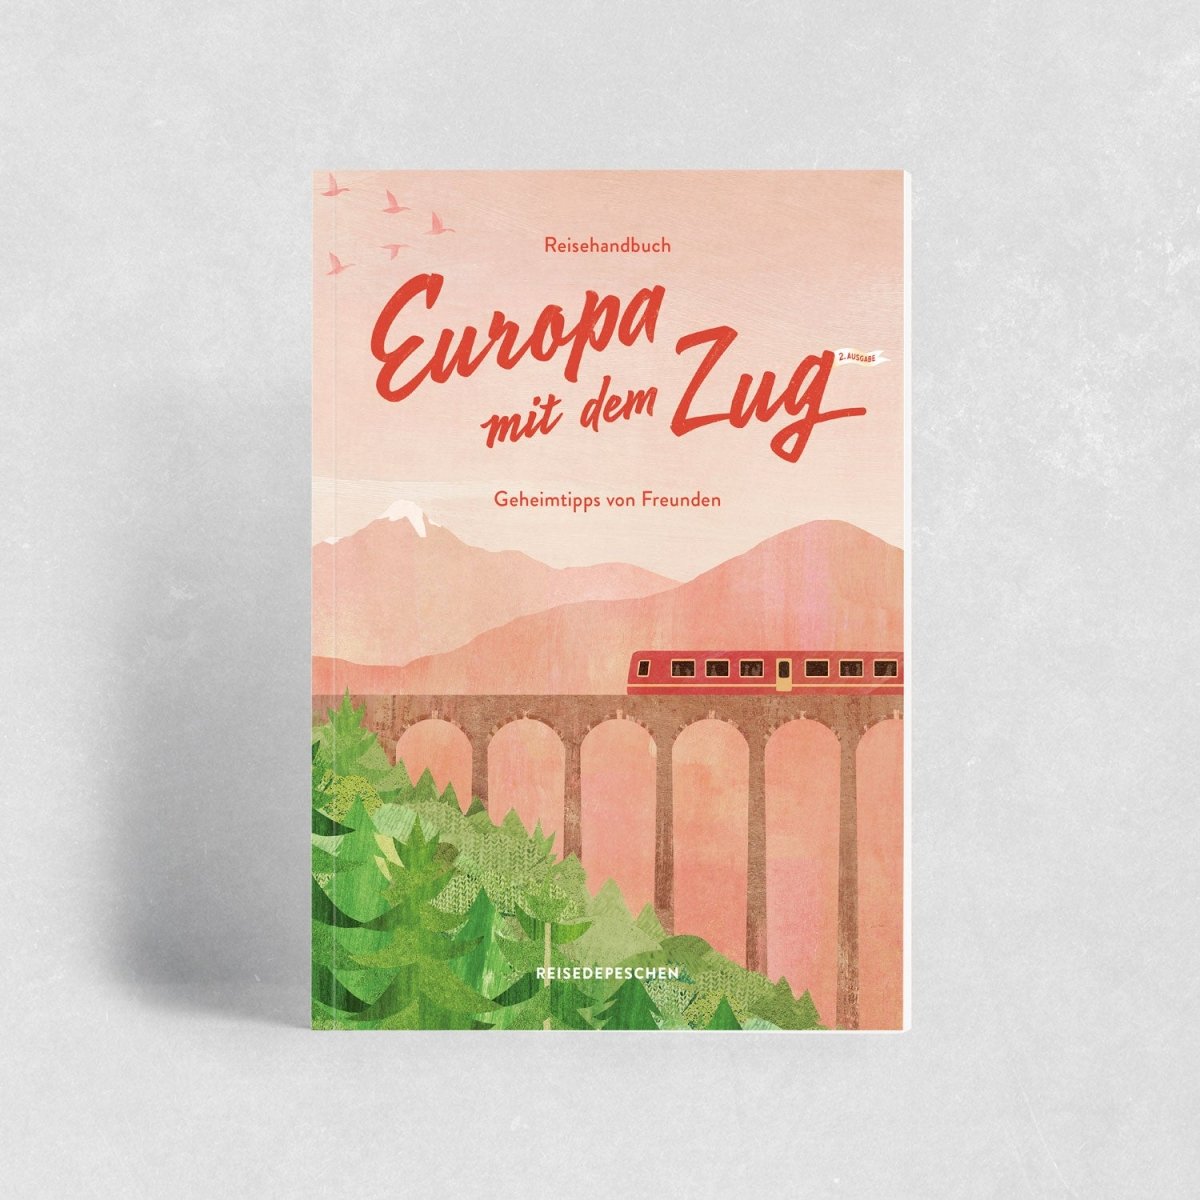 Reisedepeschen – Buch EUROPA MIT DEM ZUG mit Geheimtipps von Freunden - WILDHOOD store